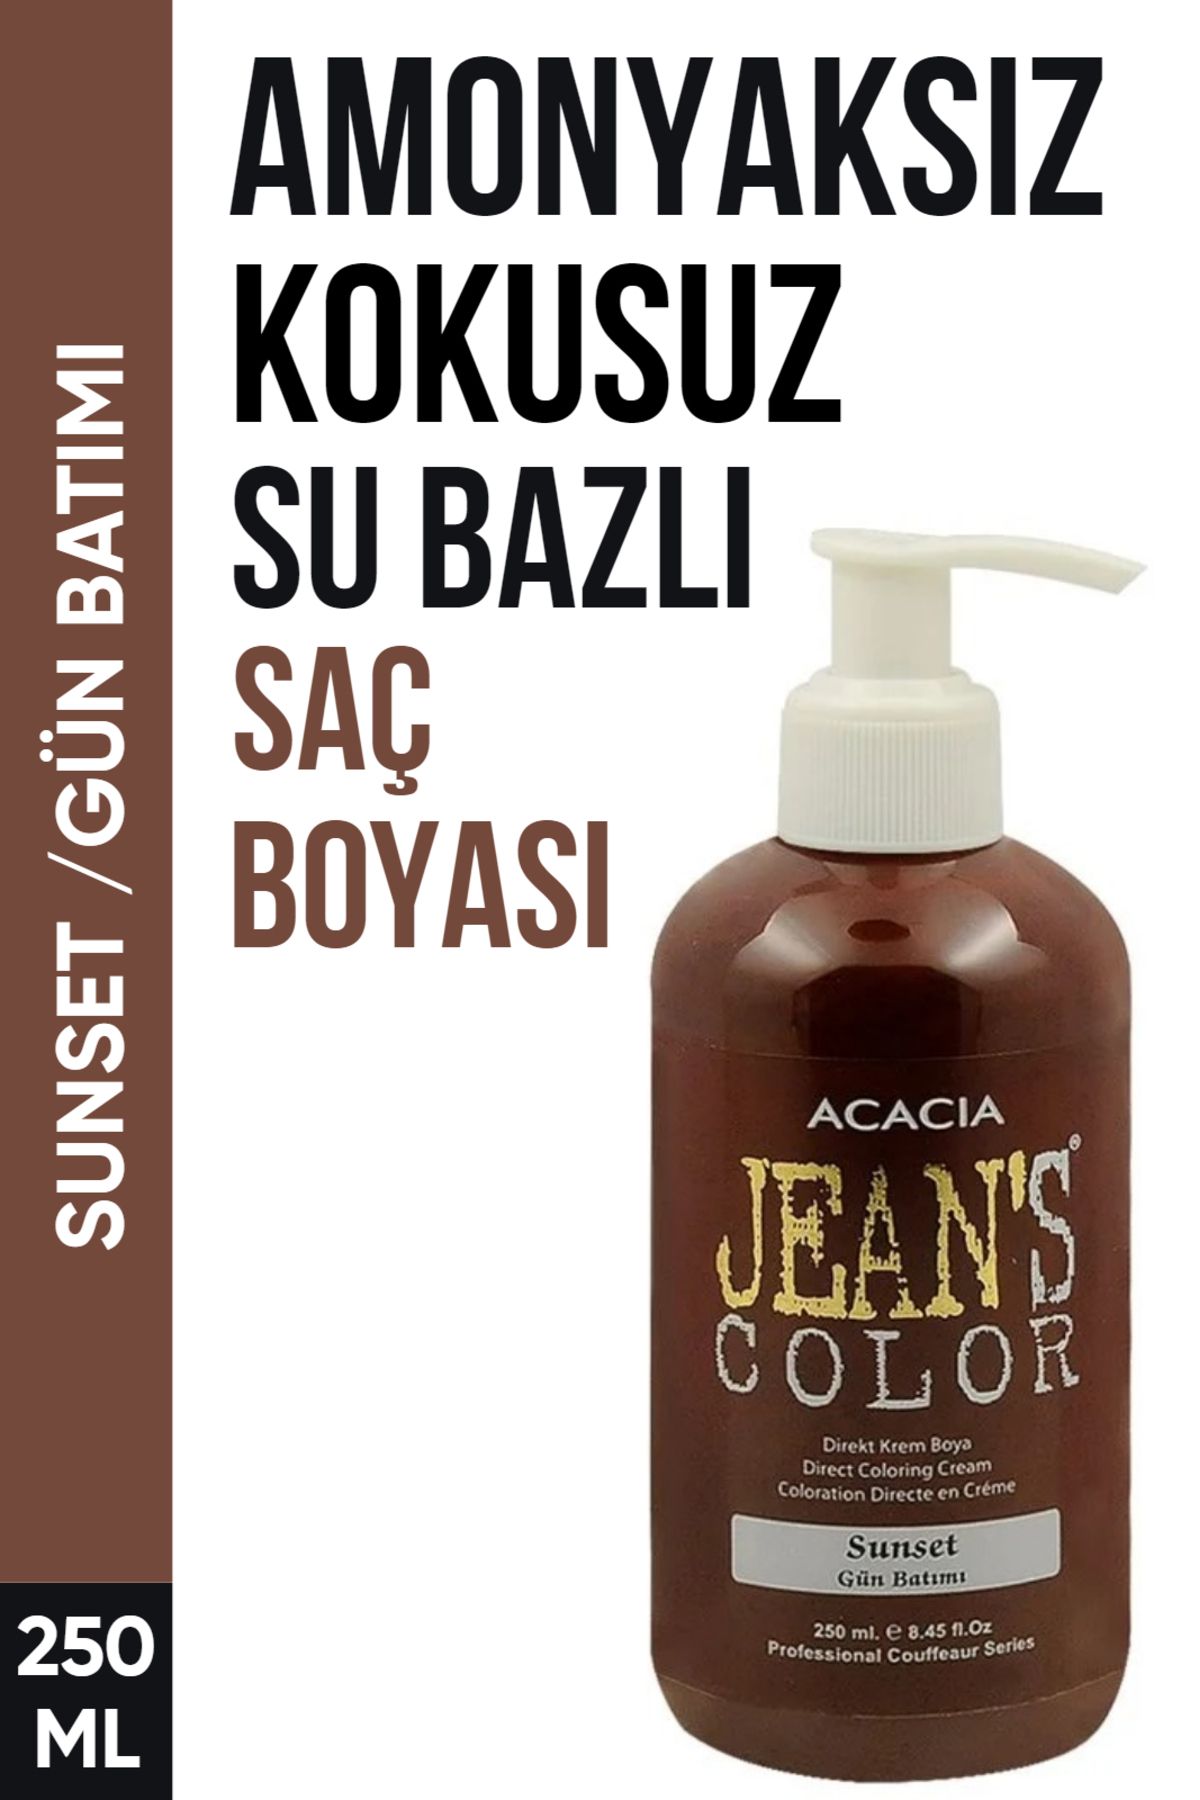 jeans color Amonyaksız Gün Batımı Renkli Saç Boyası 250 Ml Kokusuz Su Bazlı Sunset Hair Dye